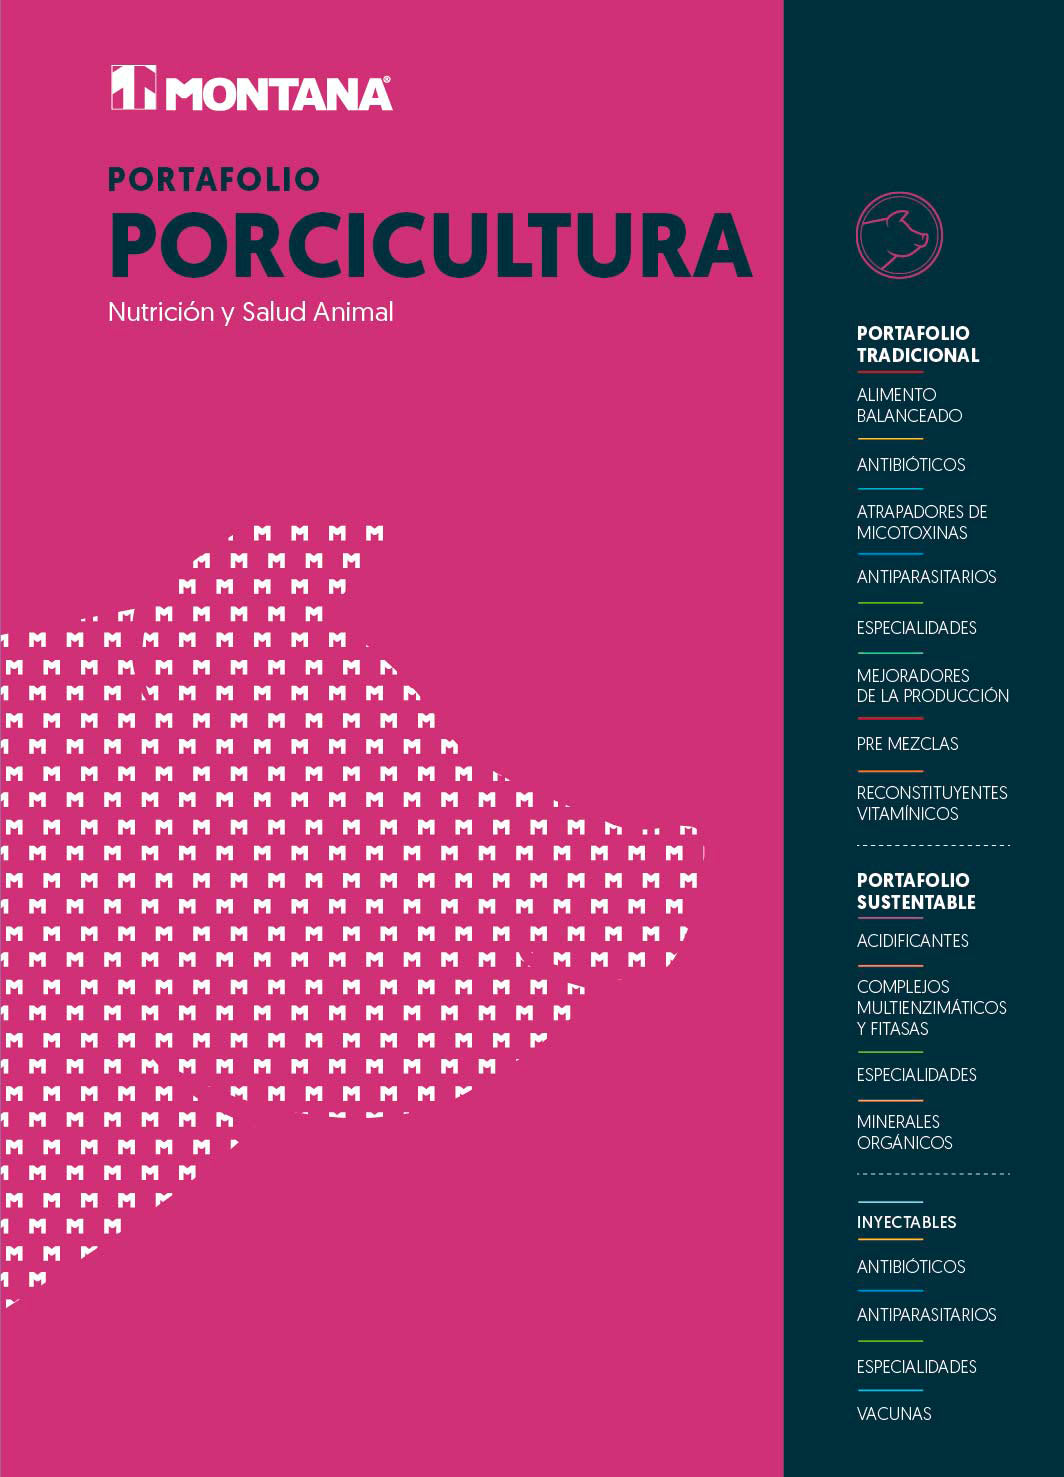 Portafolio_Porcicultura_1